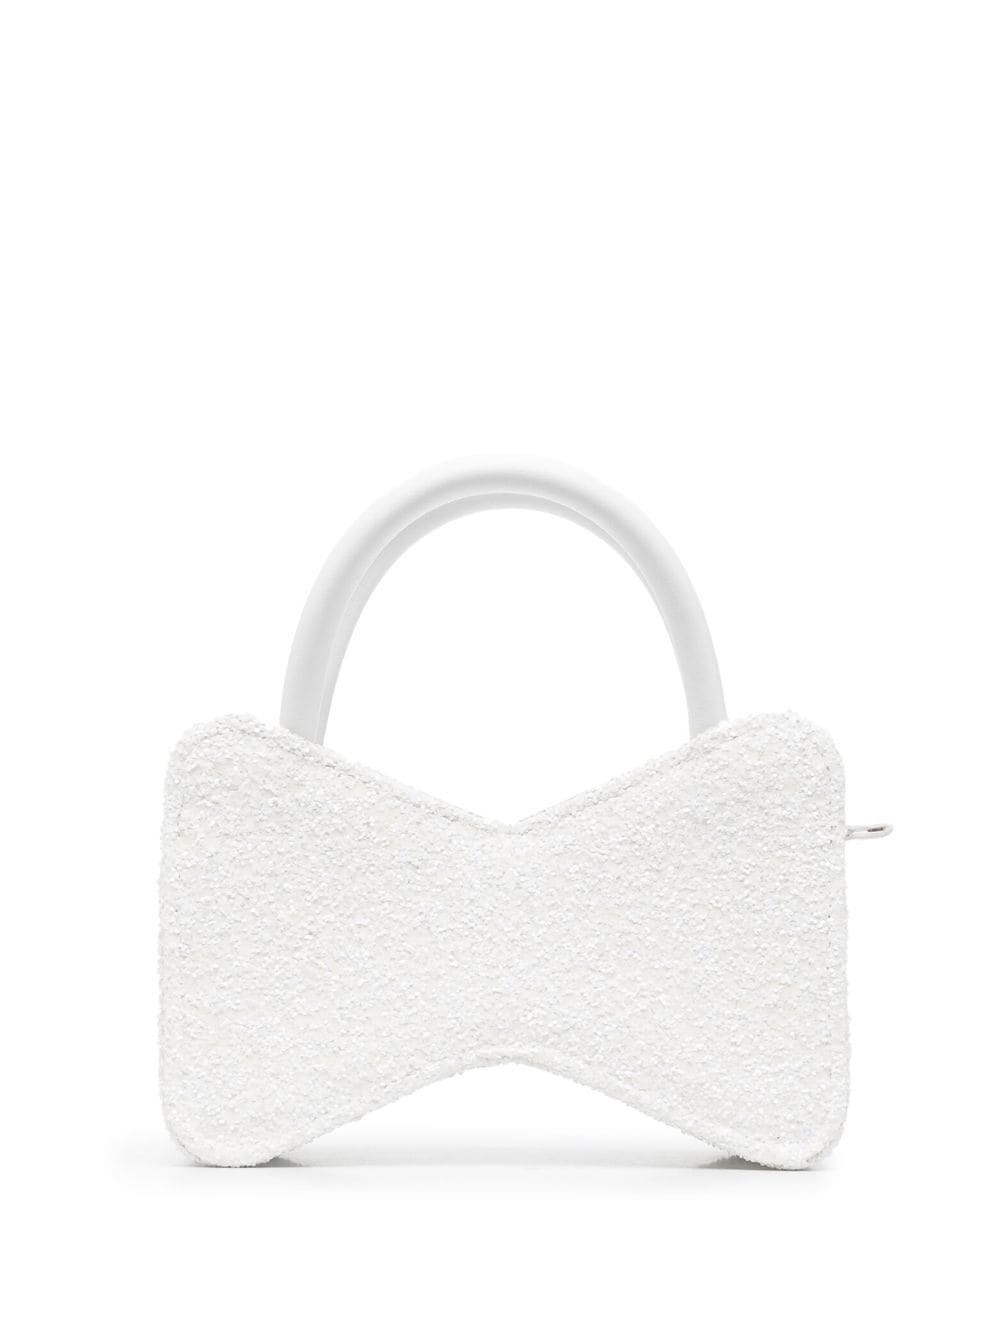 MACH & MACH bow-shape tote bag - White